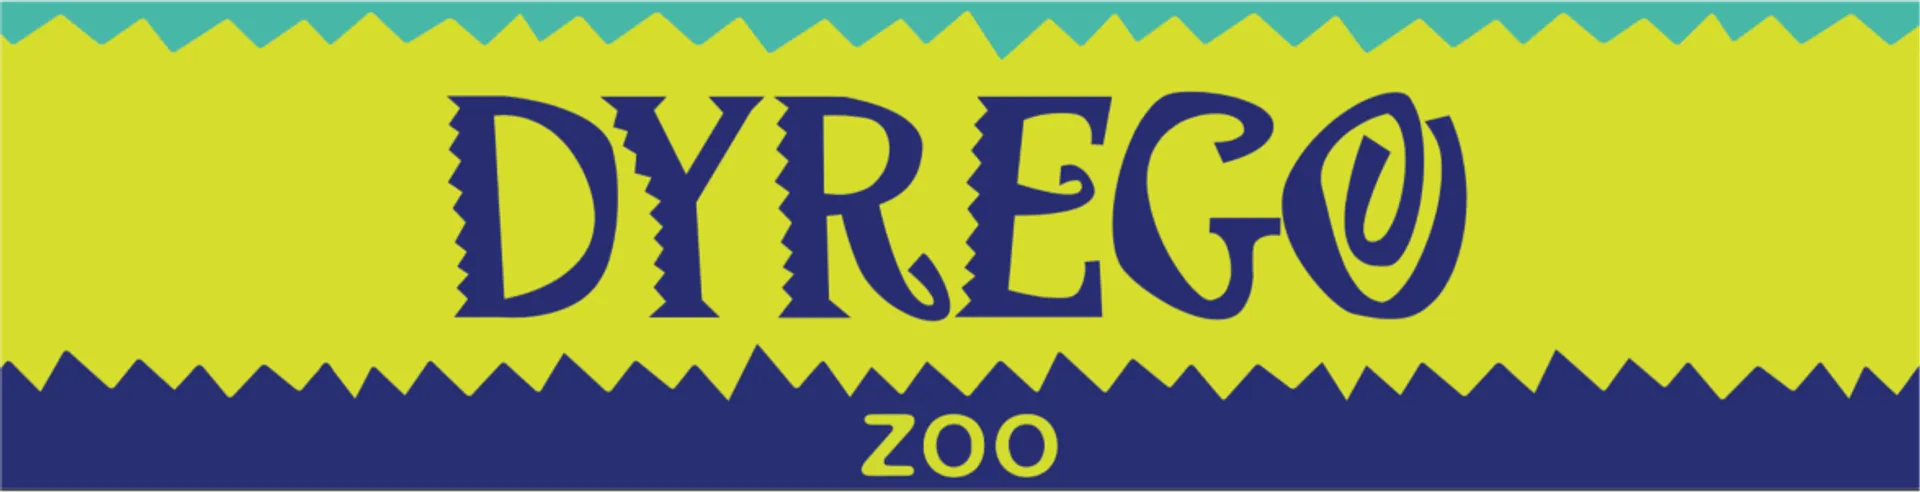 DYREGO ZOO logo